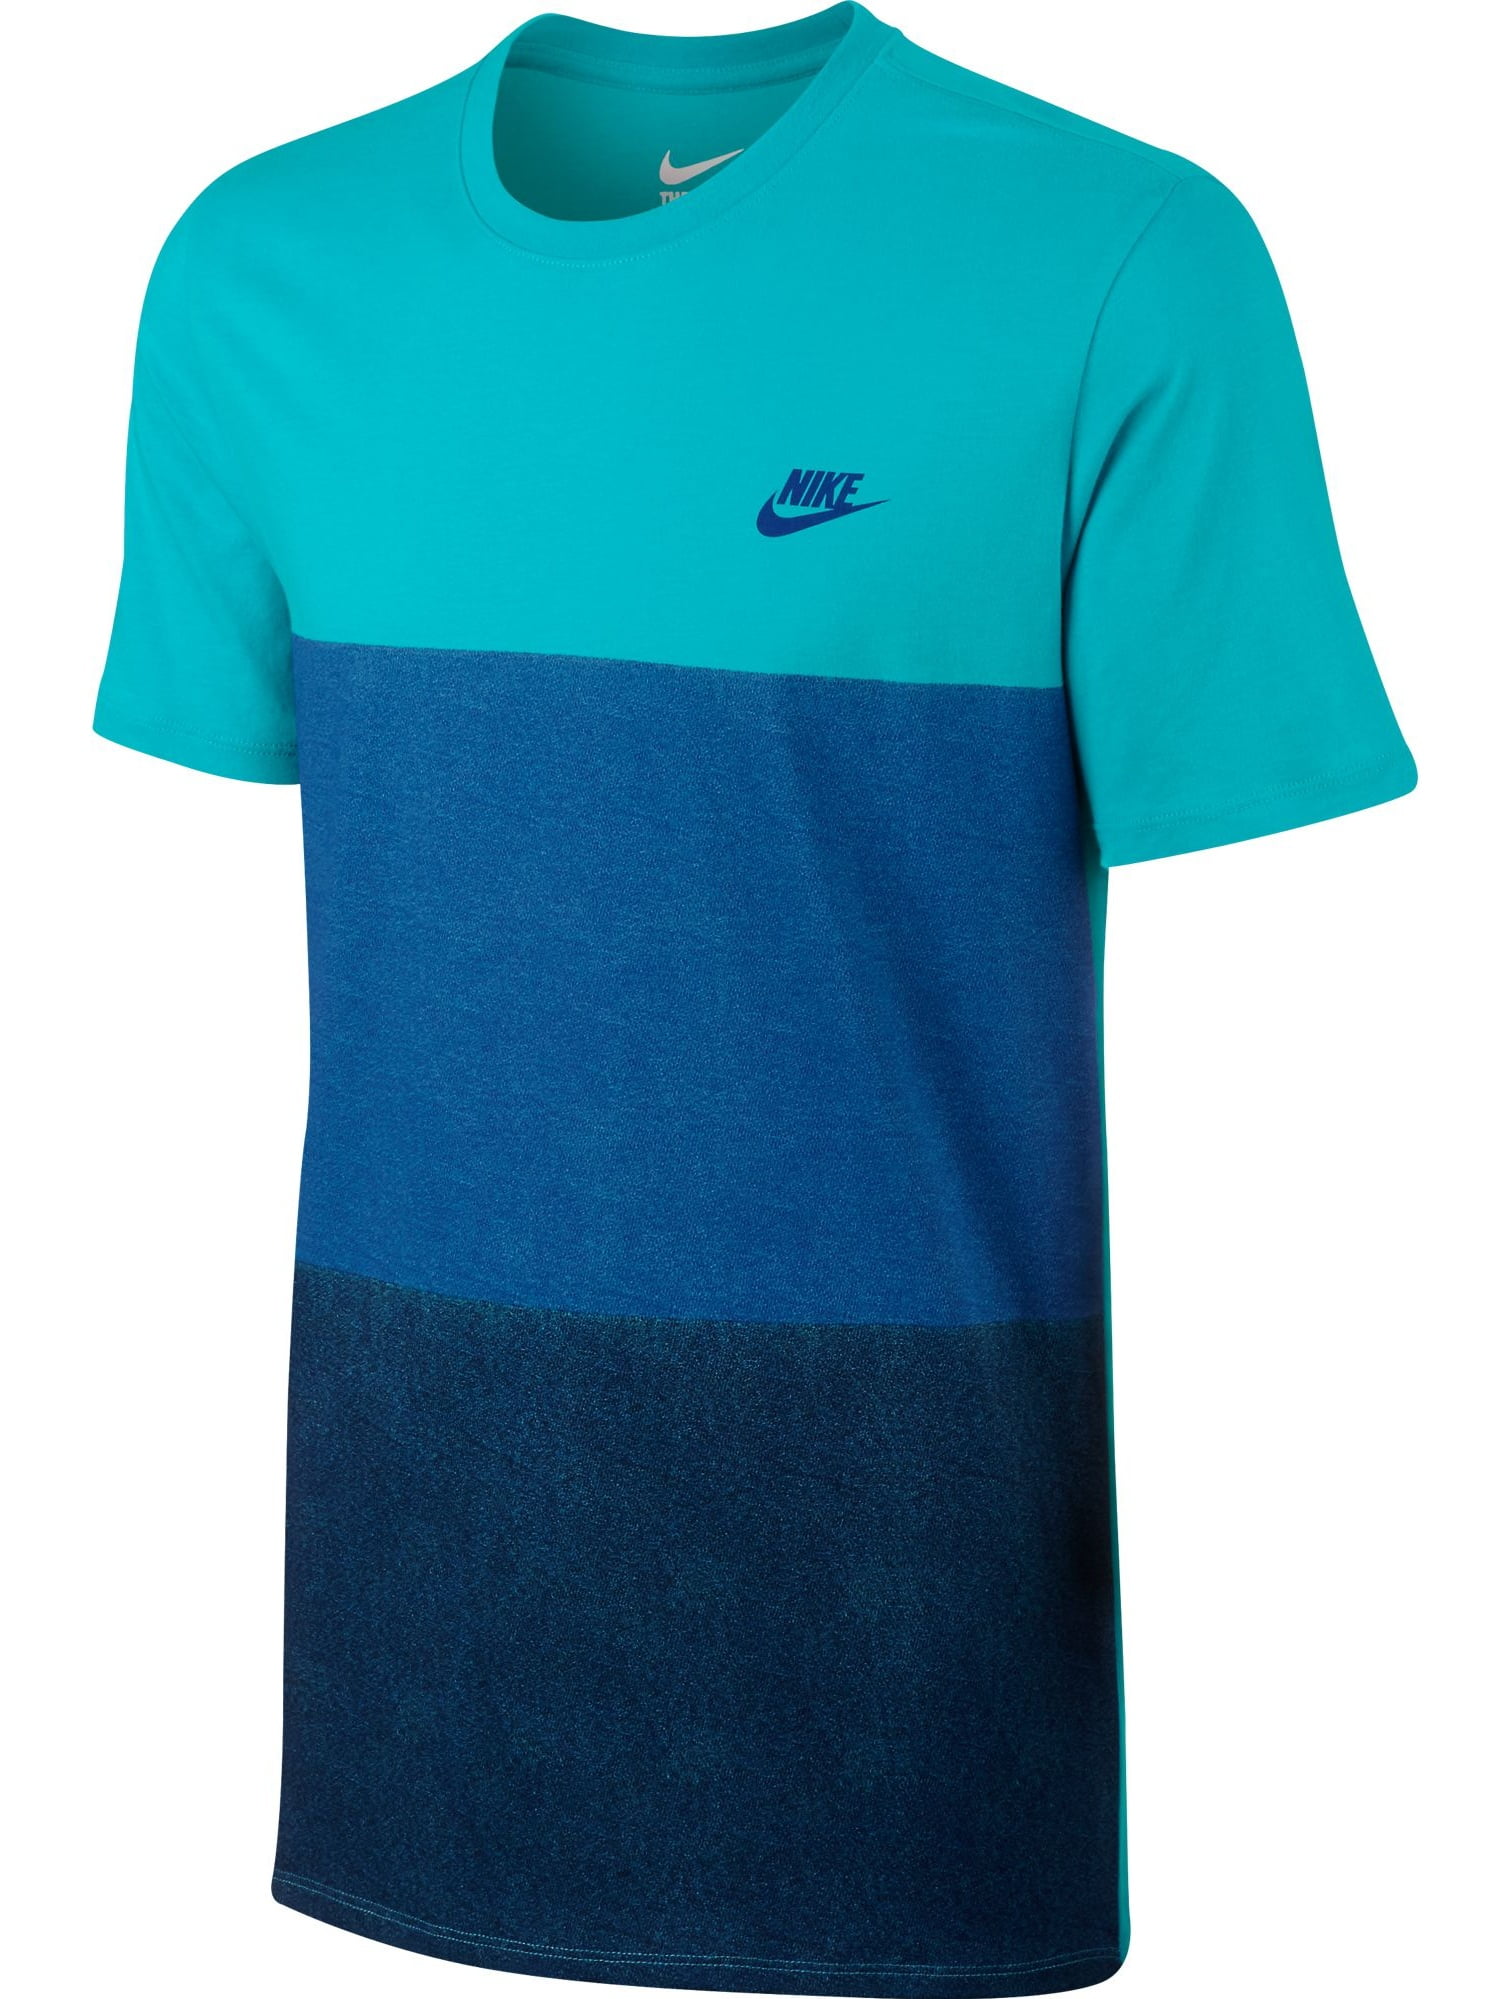 Nike - Nike Tonal Colorblock Men's T-Shirt Athletic Light Blue/Royal ...